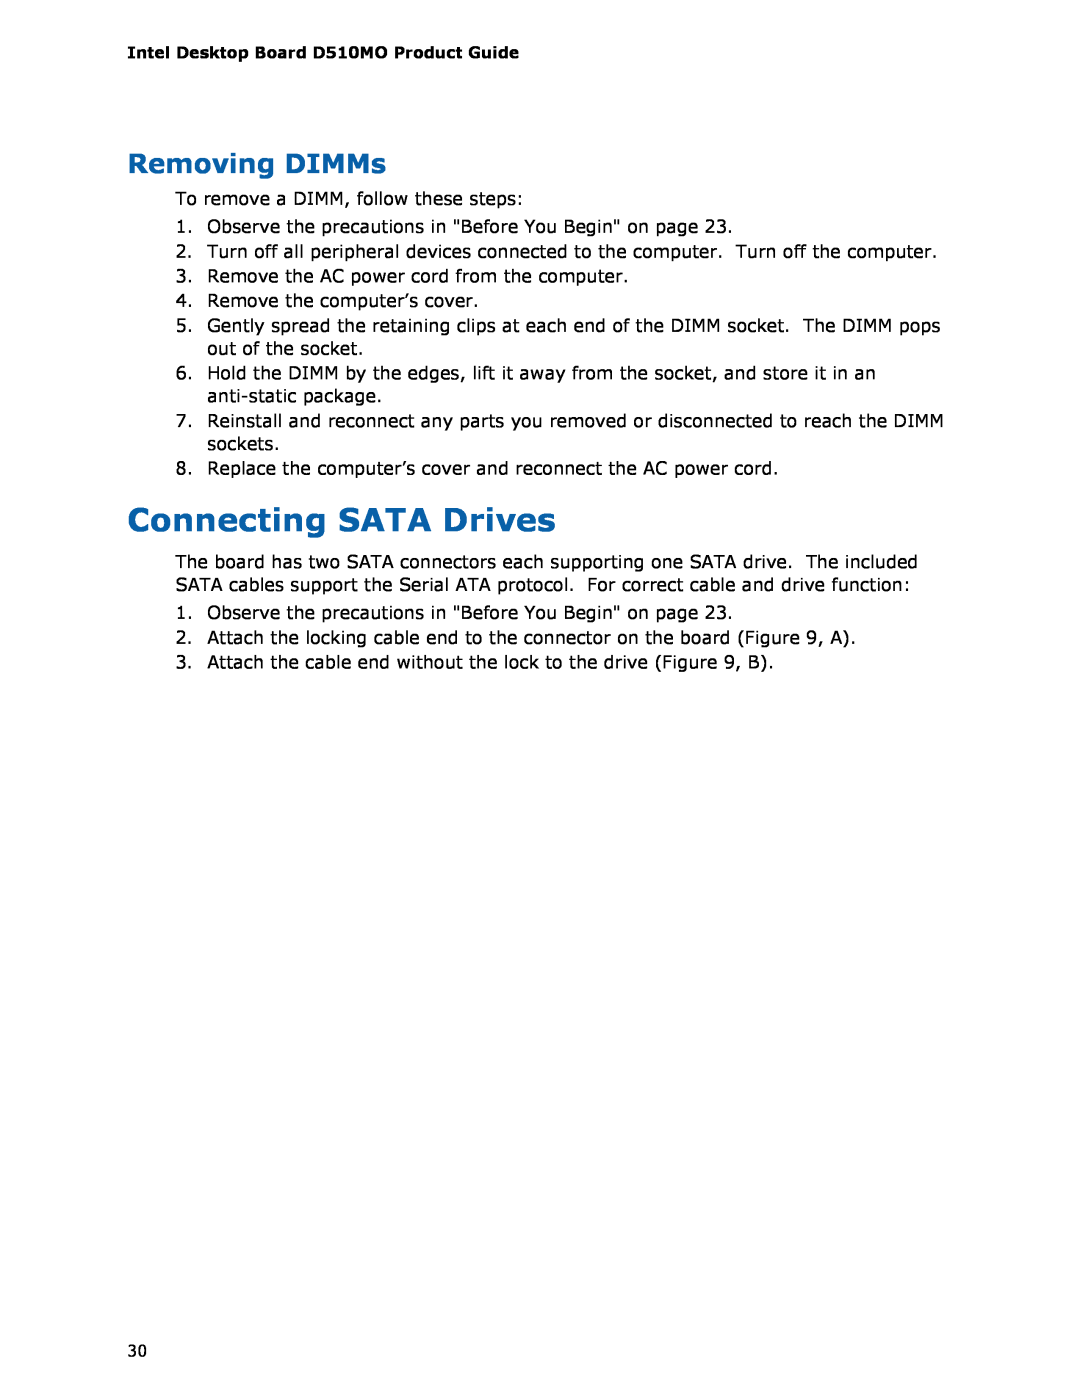 Intel D510MO manual Connecting SATA Drives, Removing DIMMs 